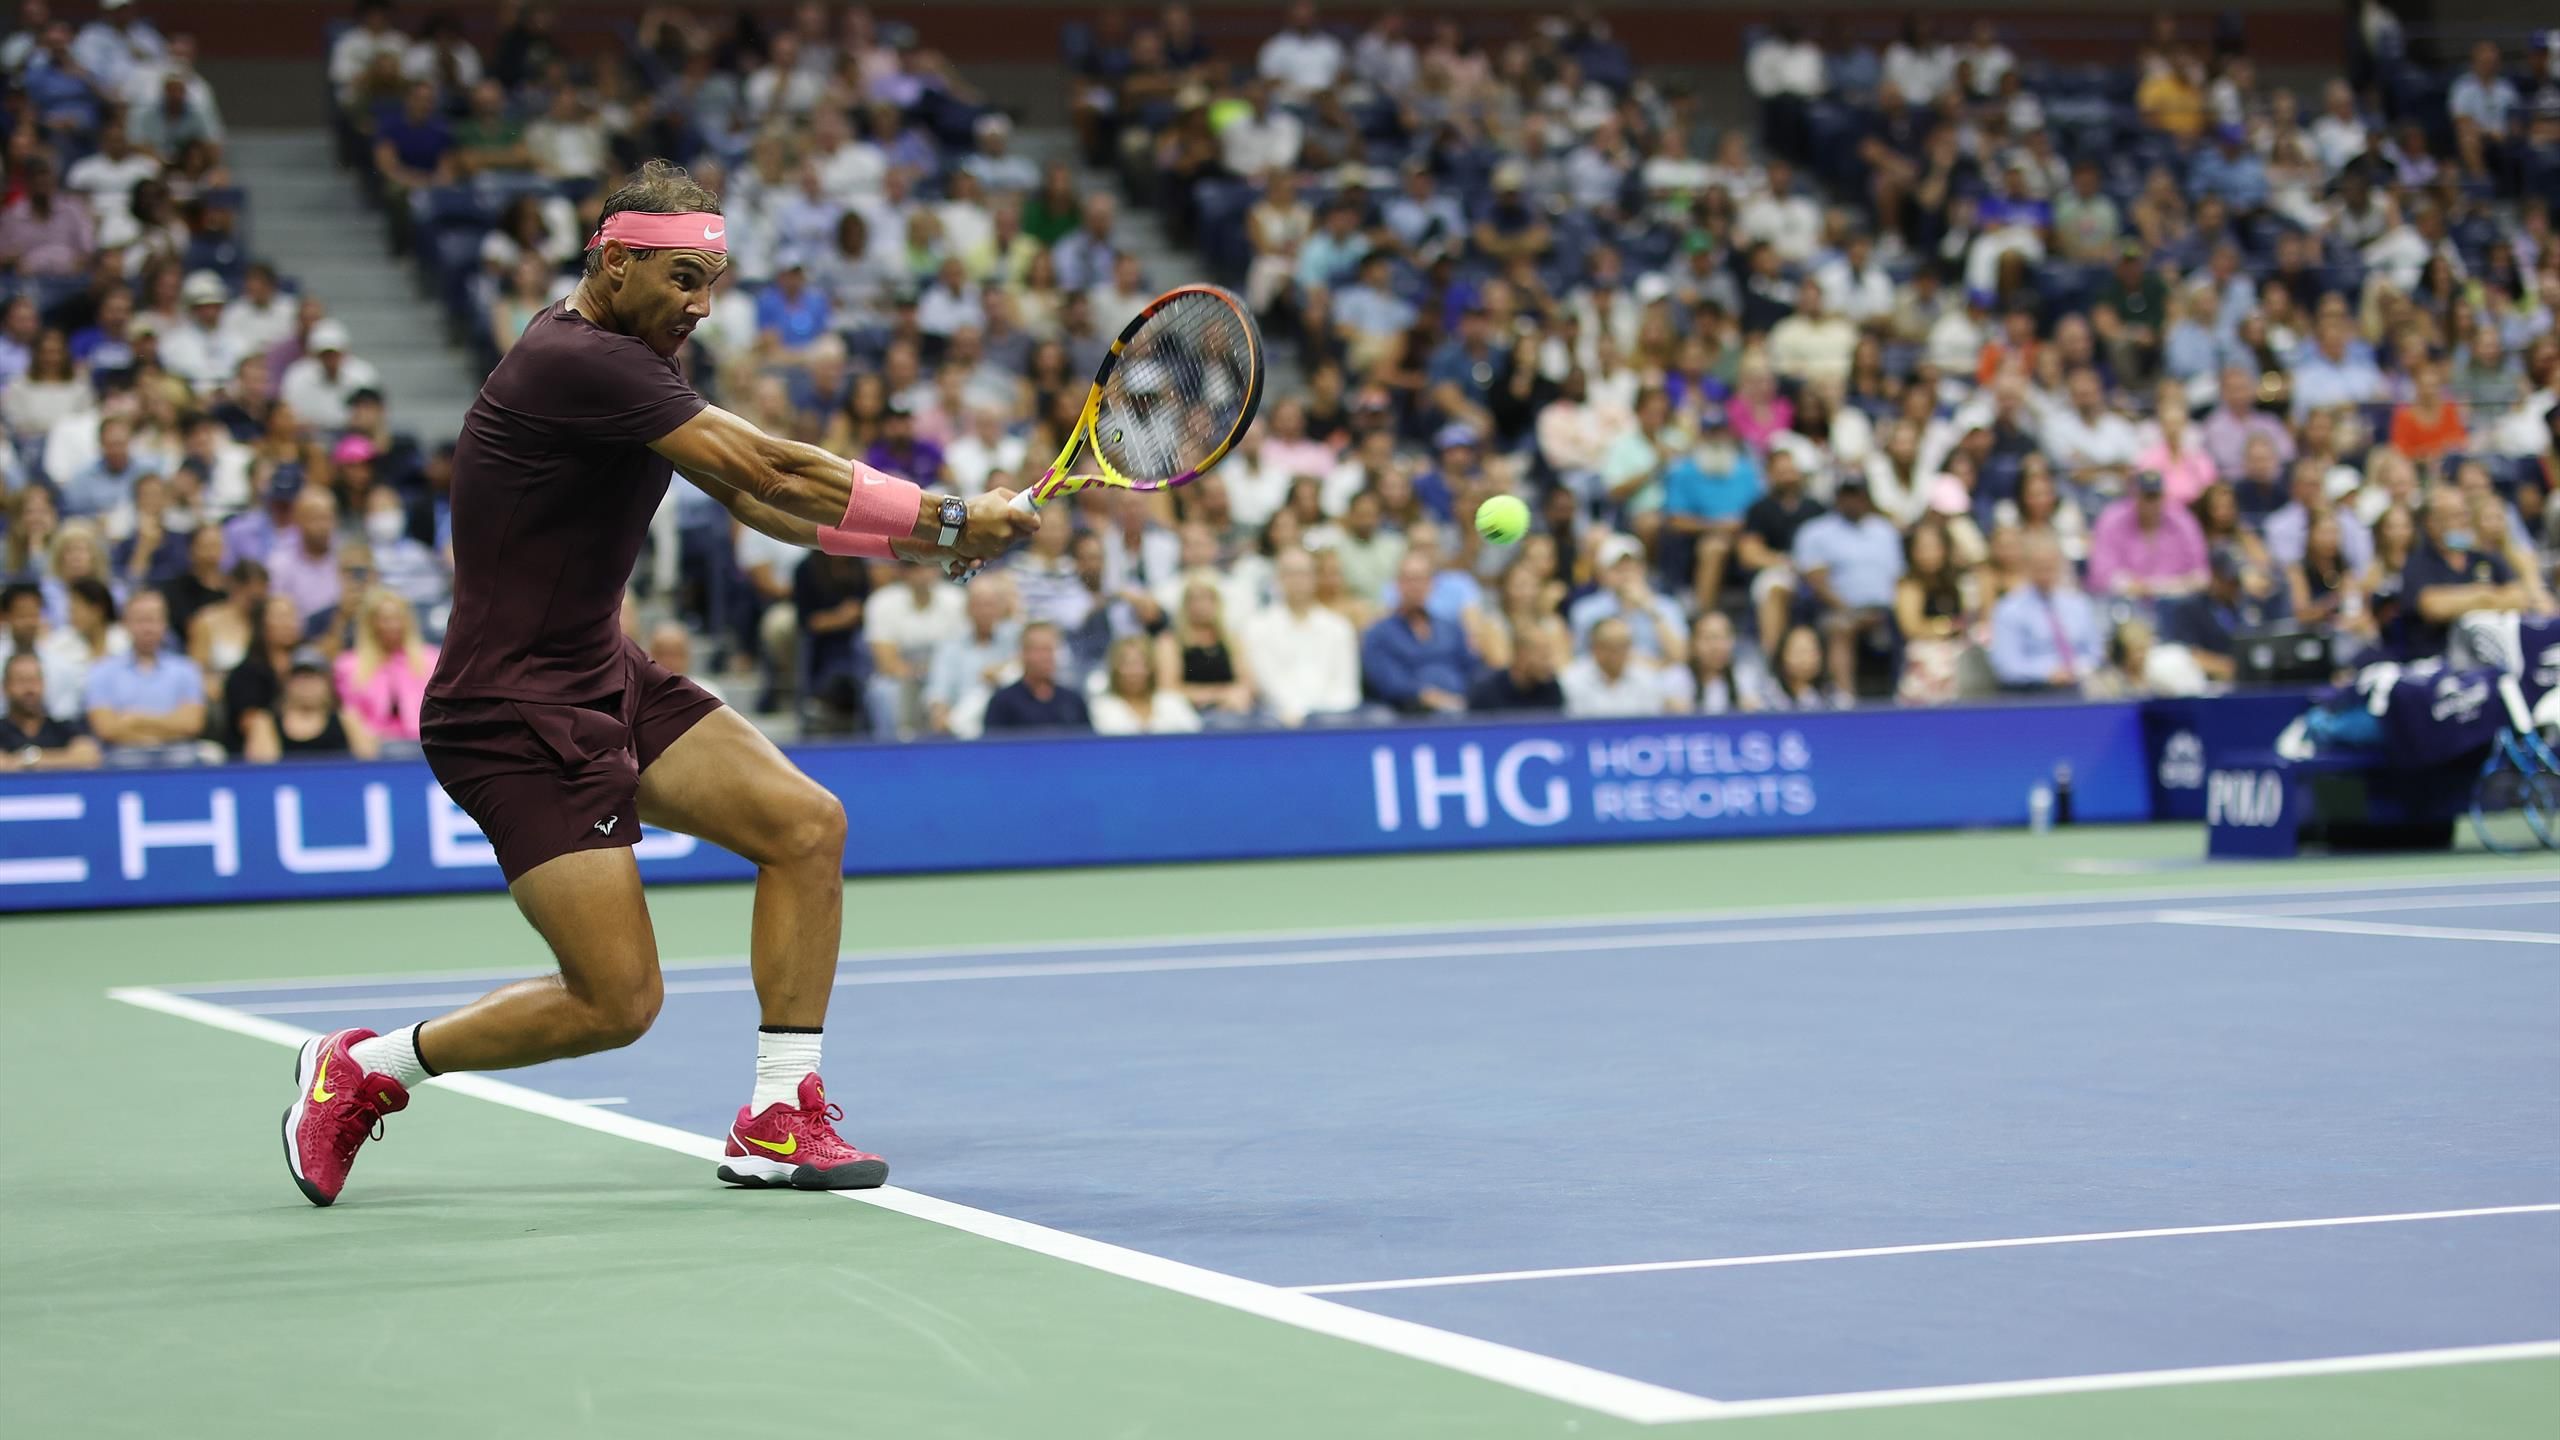 US Open 2022 Rafael Nadal schlägt unfassbaren Winner gegen Fabio Fognini - Tennis Video